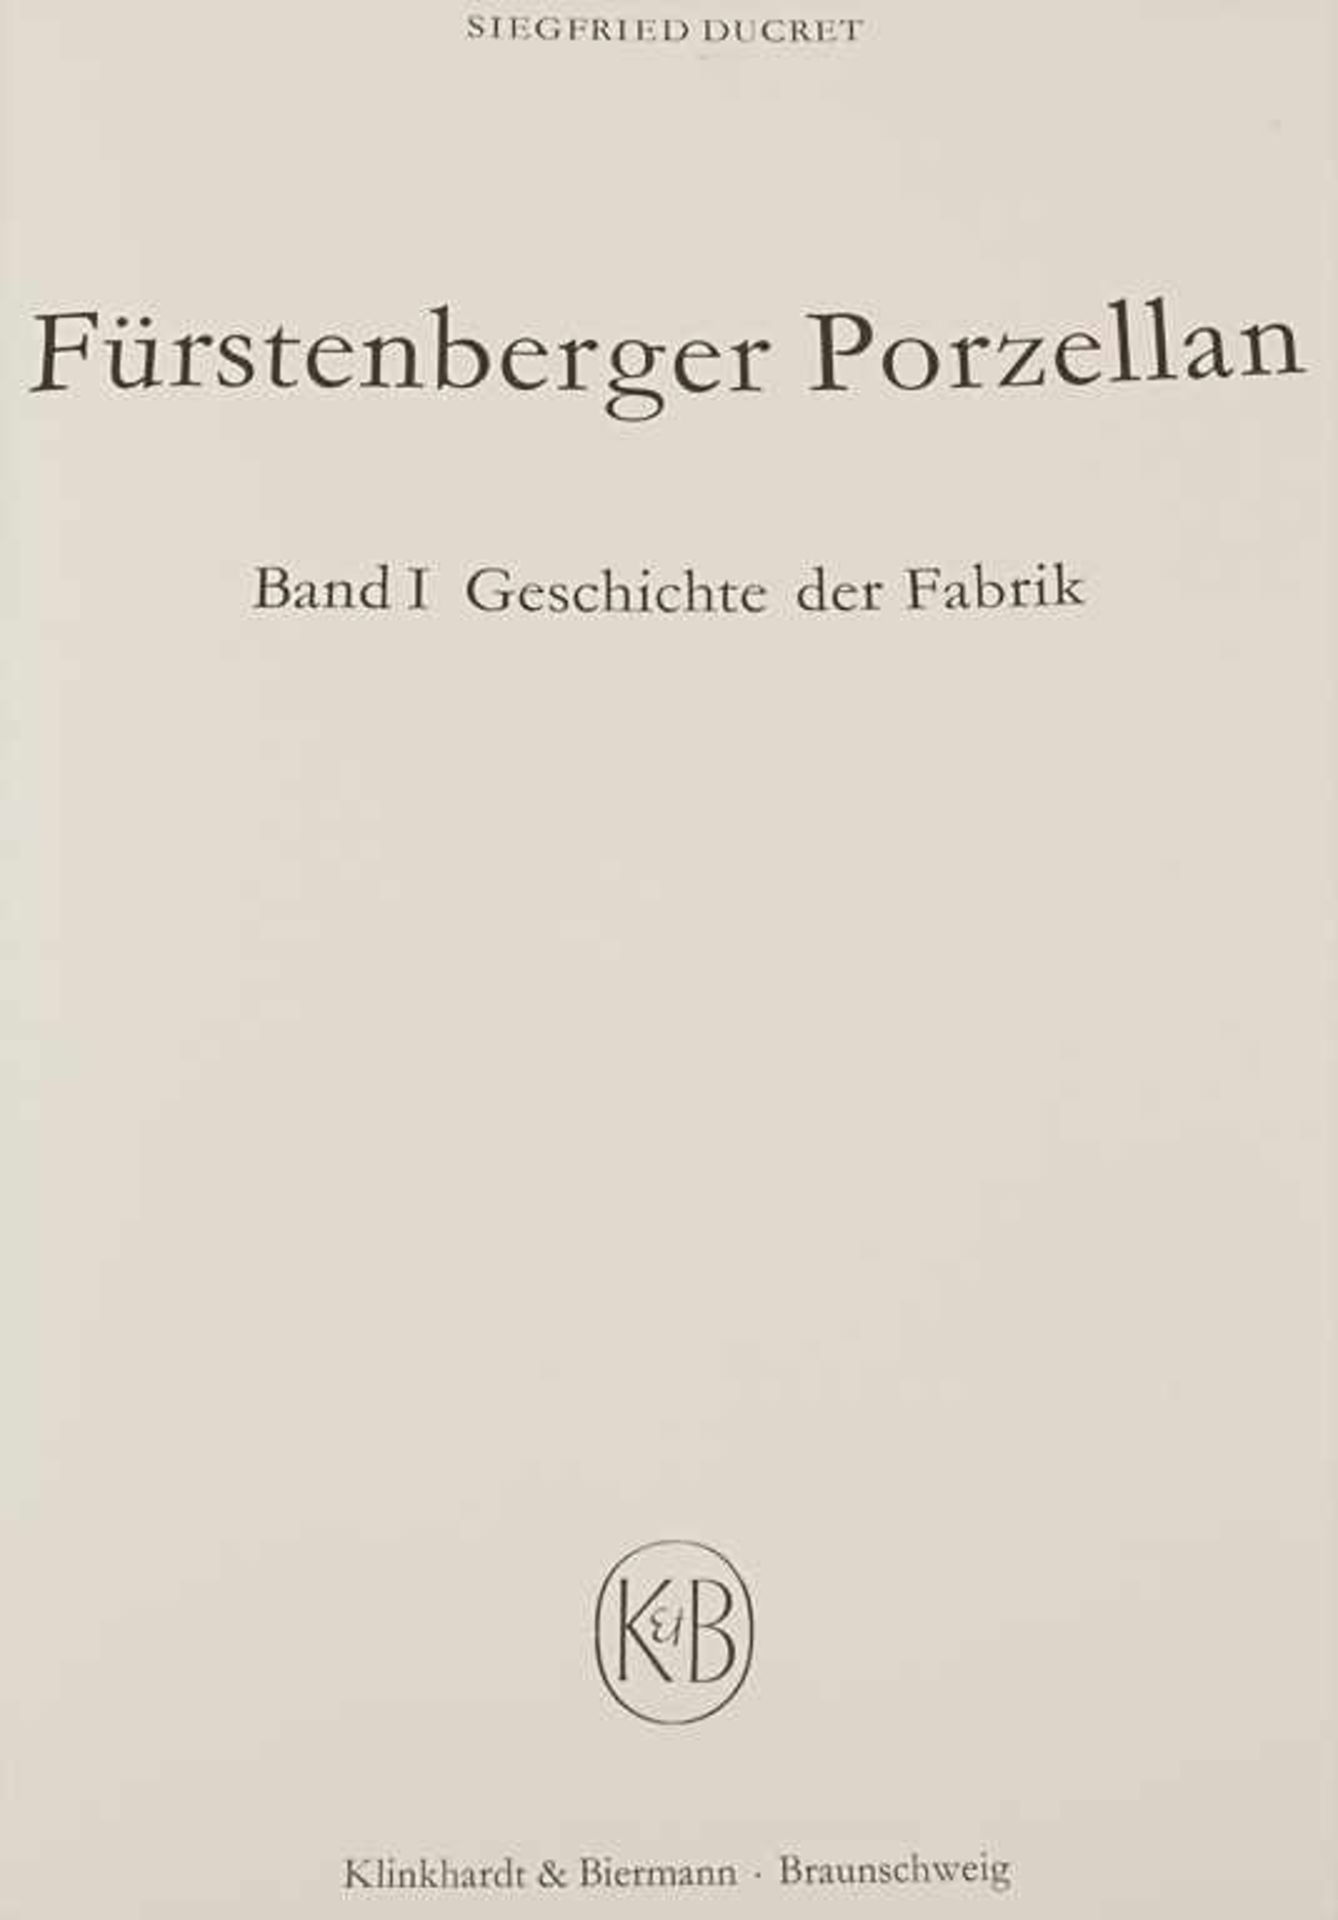 Ducret, Siegfried: Fürstenberger PorzellanTitel: Fürstenberger Porzellan. 3 Bde.Verlag: Braunschweig - Image 2 of 9